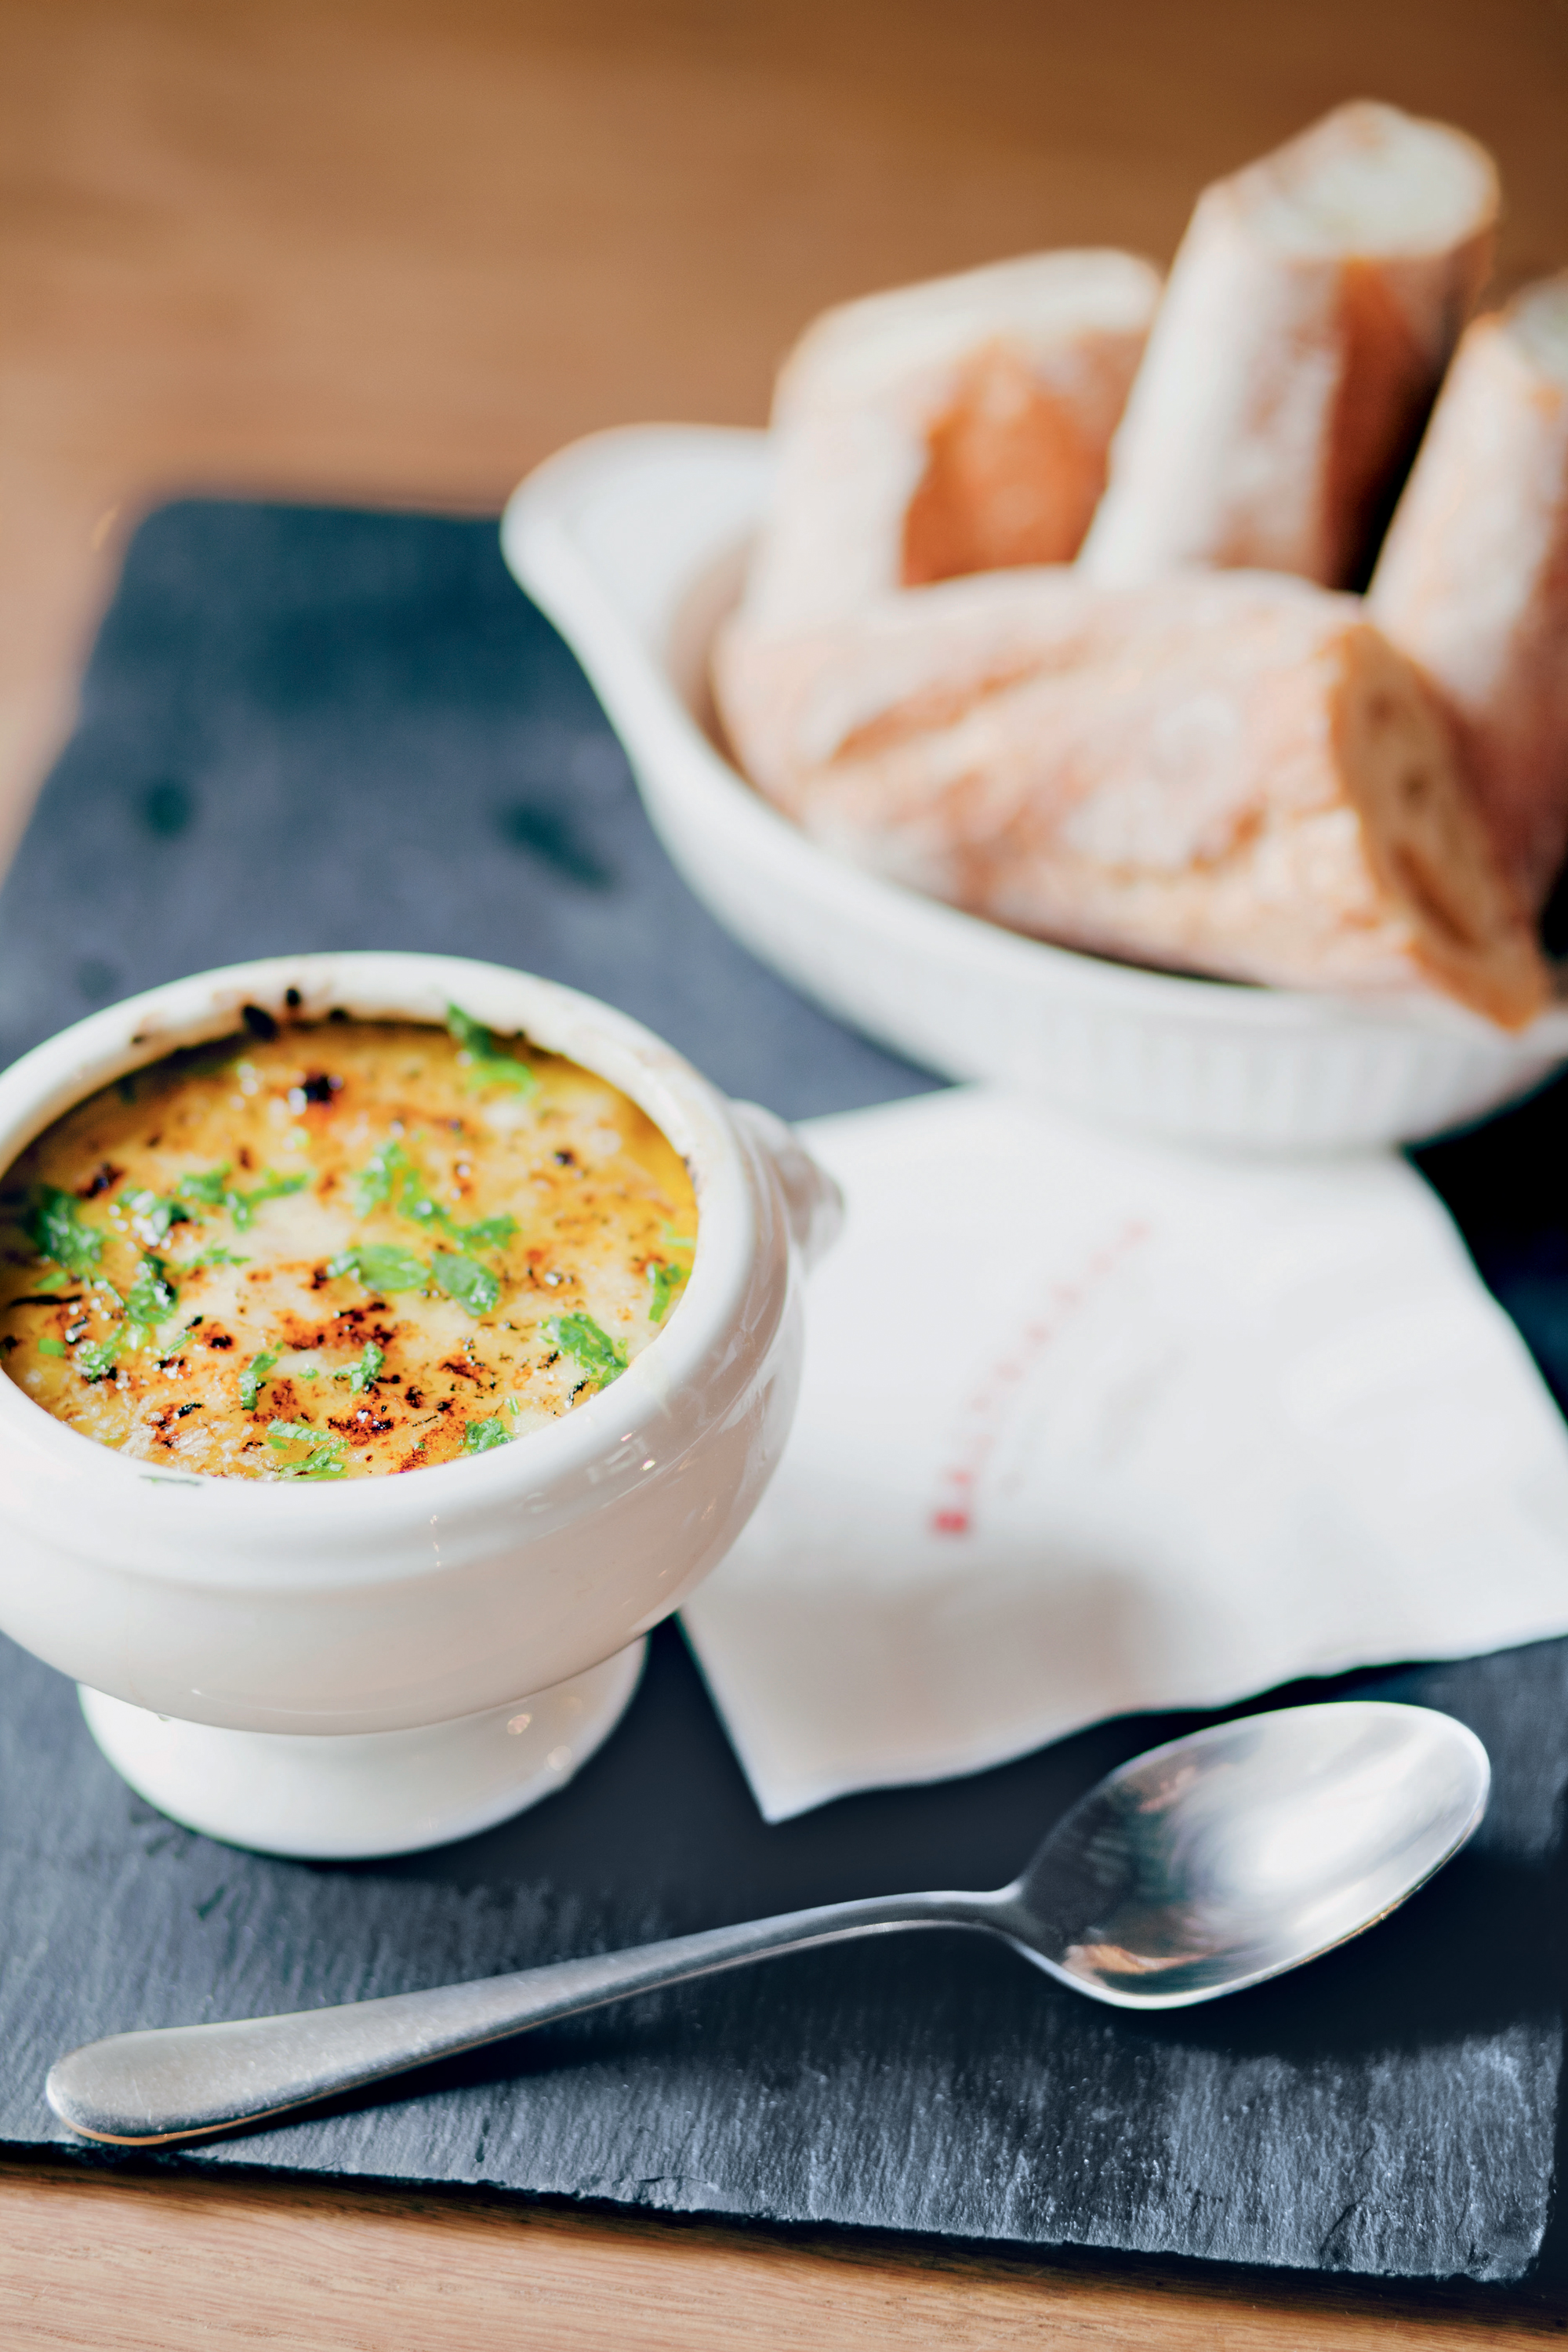 Gratinierte Französische Zwiebelsuppe — Rezepte Suchen